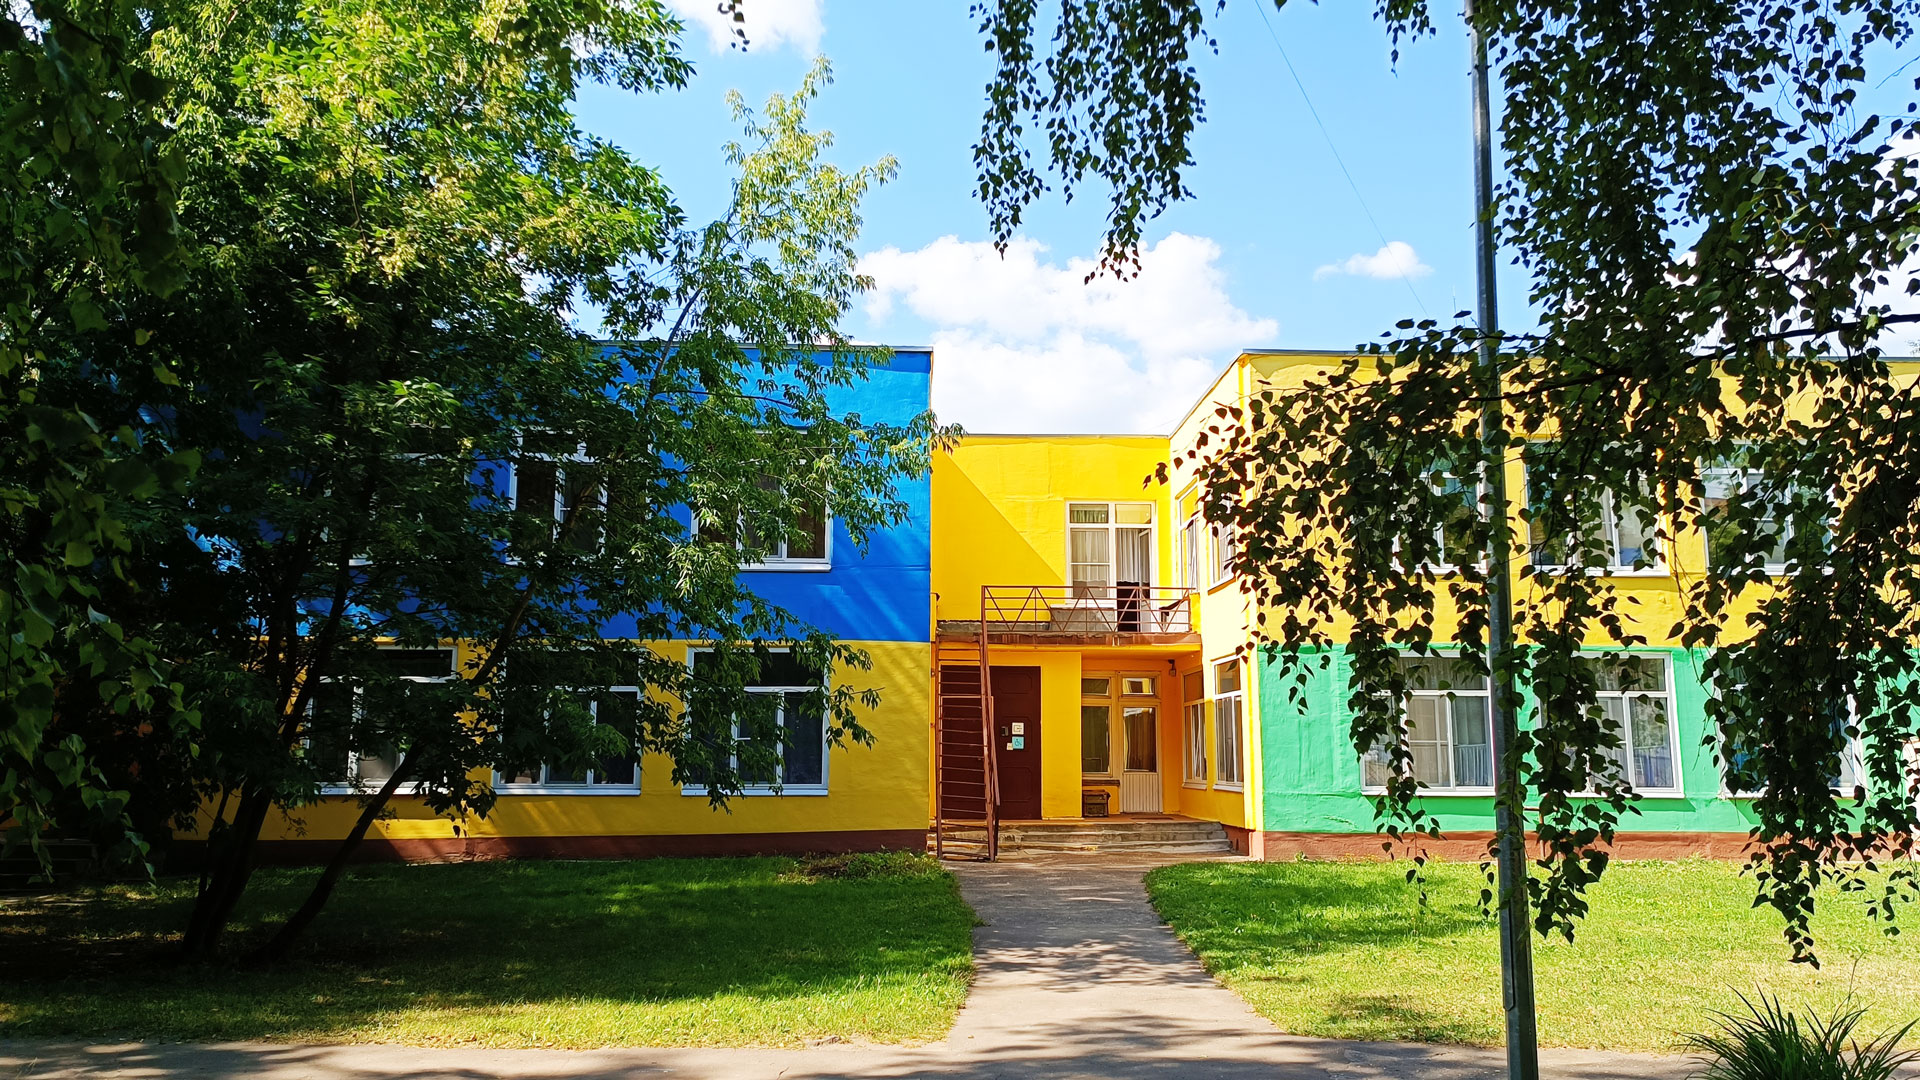 Детский сад 50 Ярославль: общий вид здания.